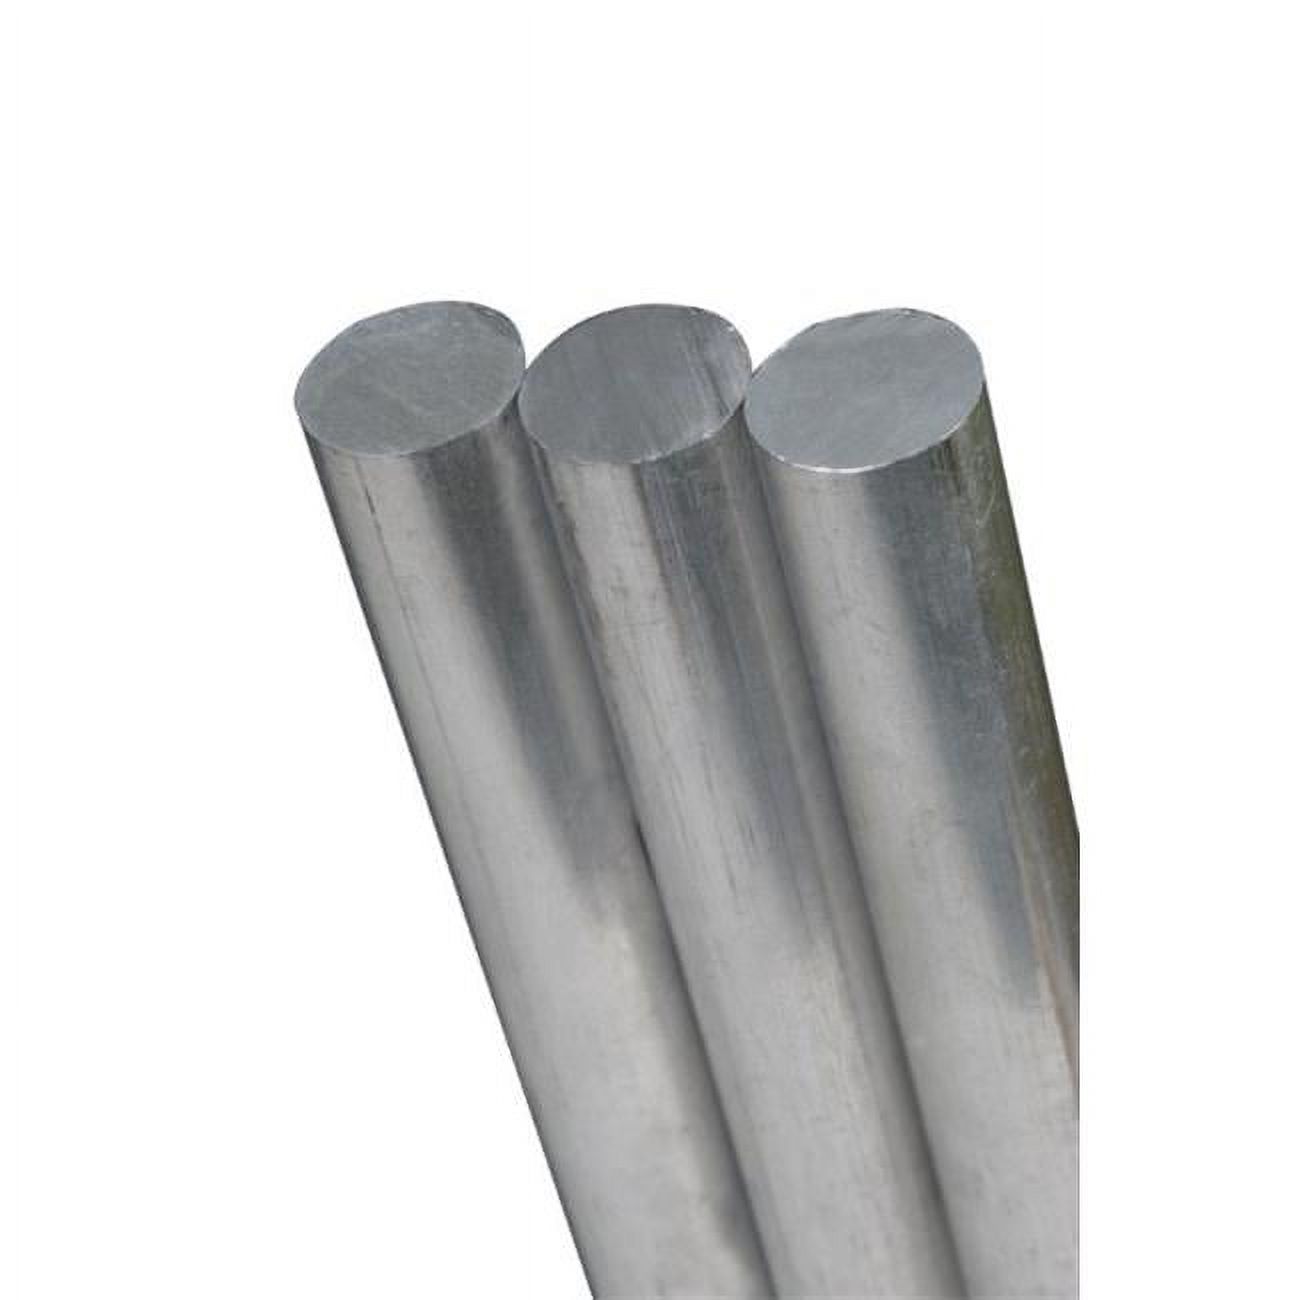 K & S 83046 0.31 x 12 in. Aluminium Round Rod - image 1 of 2